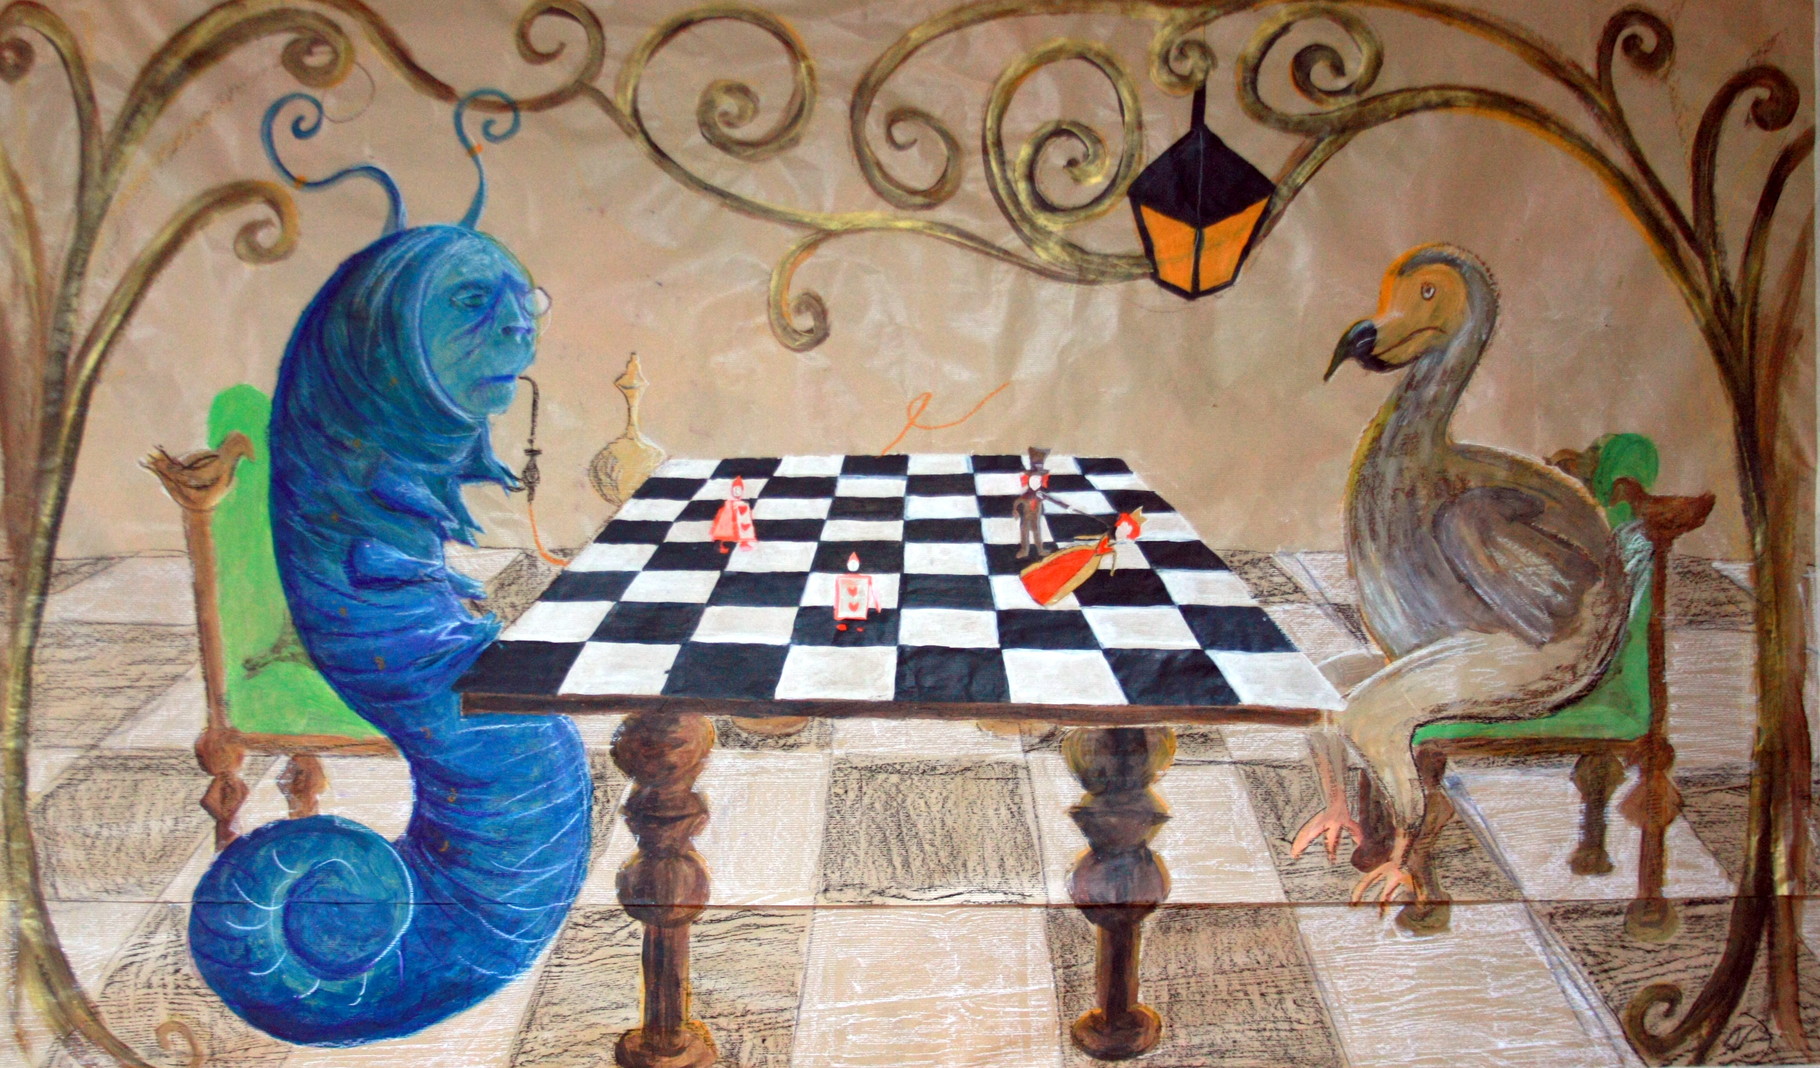 Echecs et mat, fresque pour décoration mariage sur le thème d'Alice,  sur papier craft, 150x200, 2015